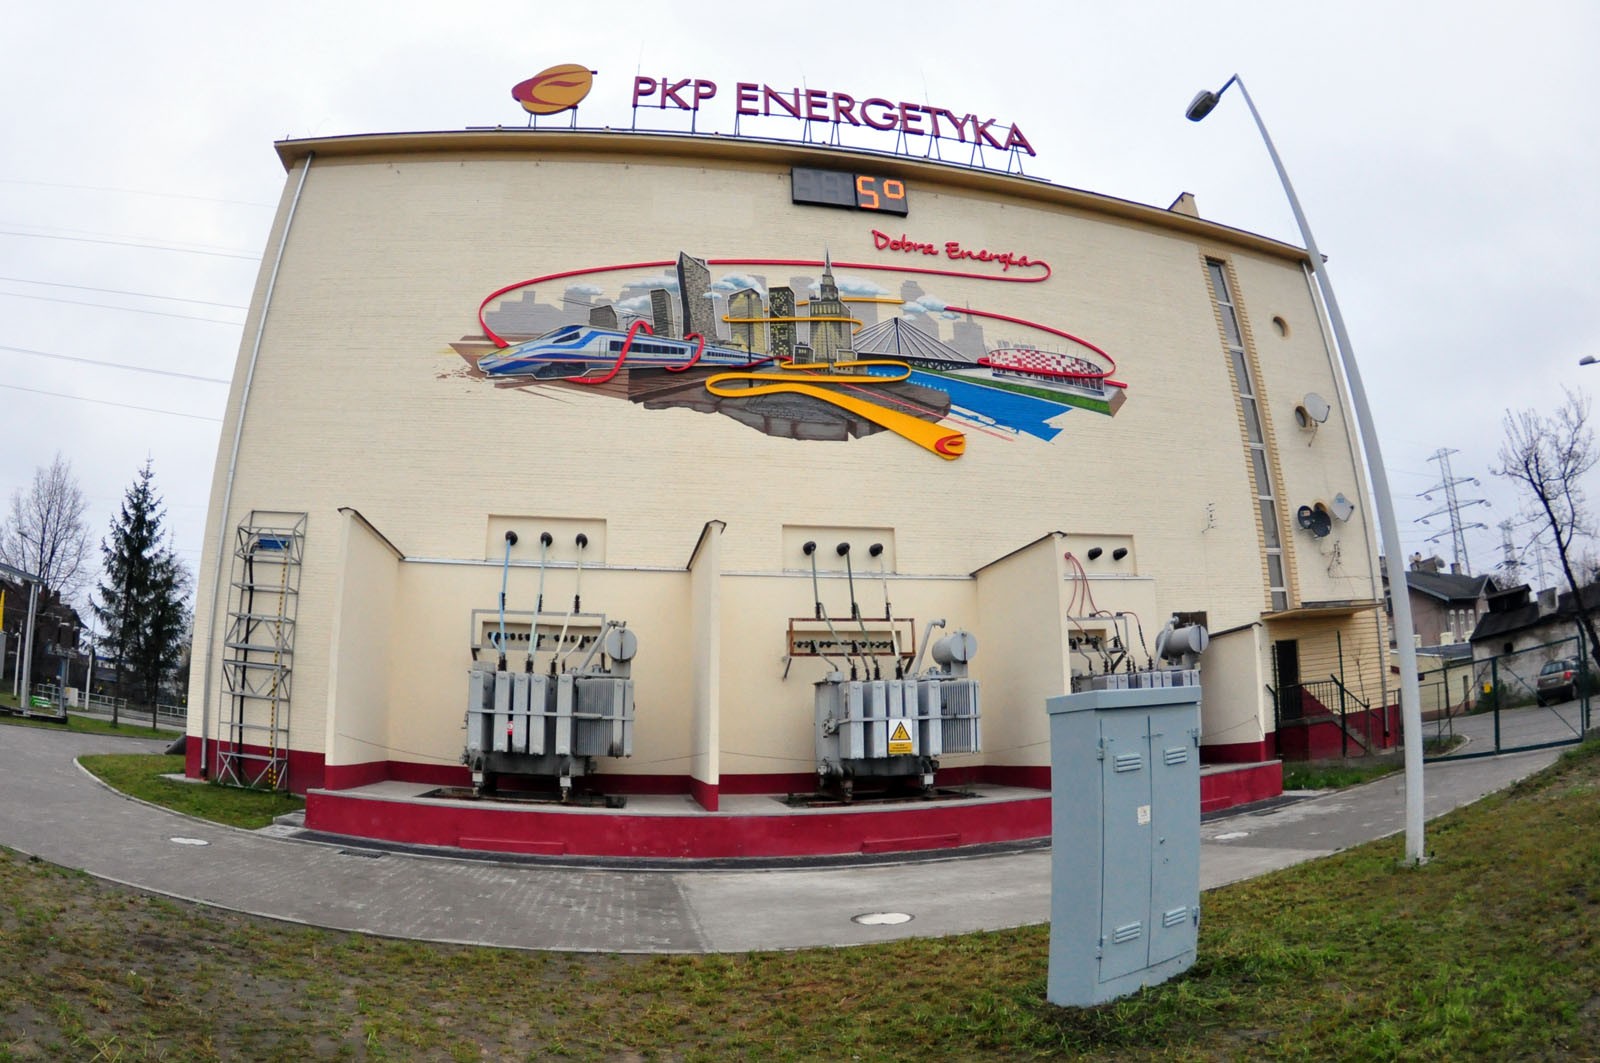 PKP Energetyka S.A. Good Energy mural in Warsaw | Good energy | Portfolio